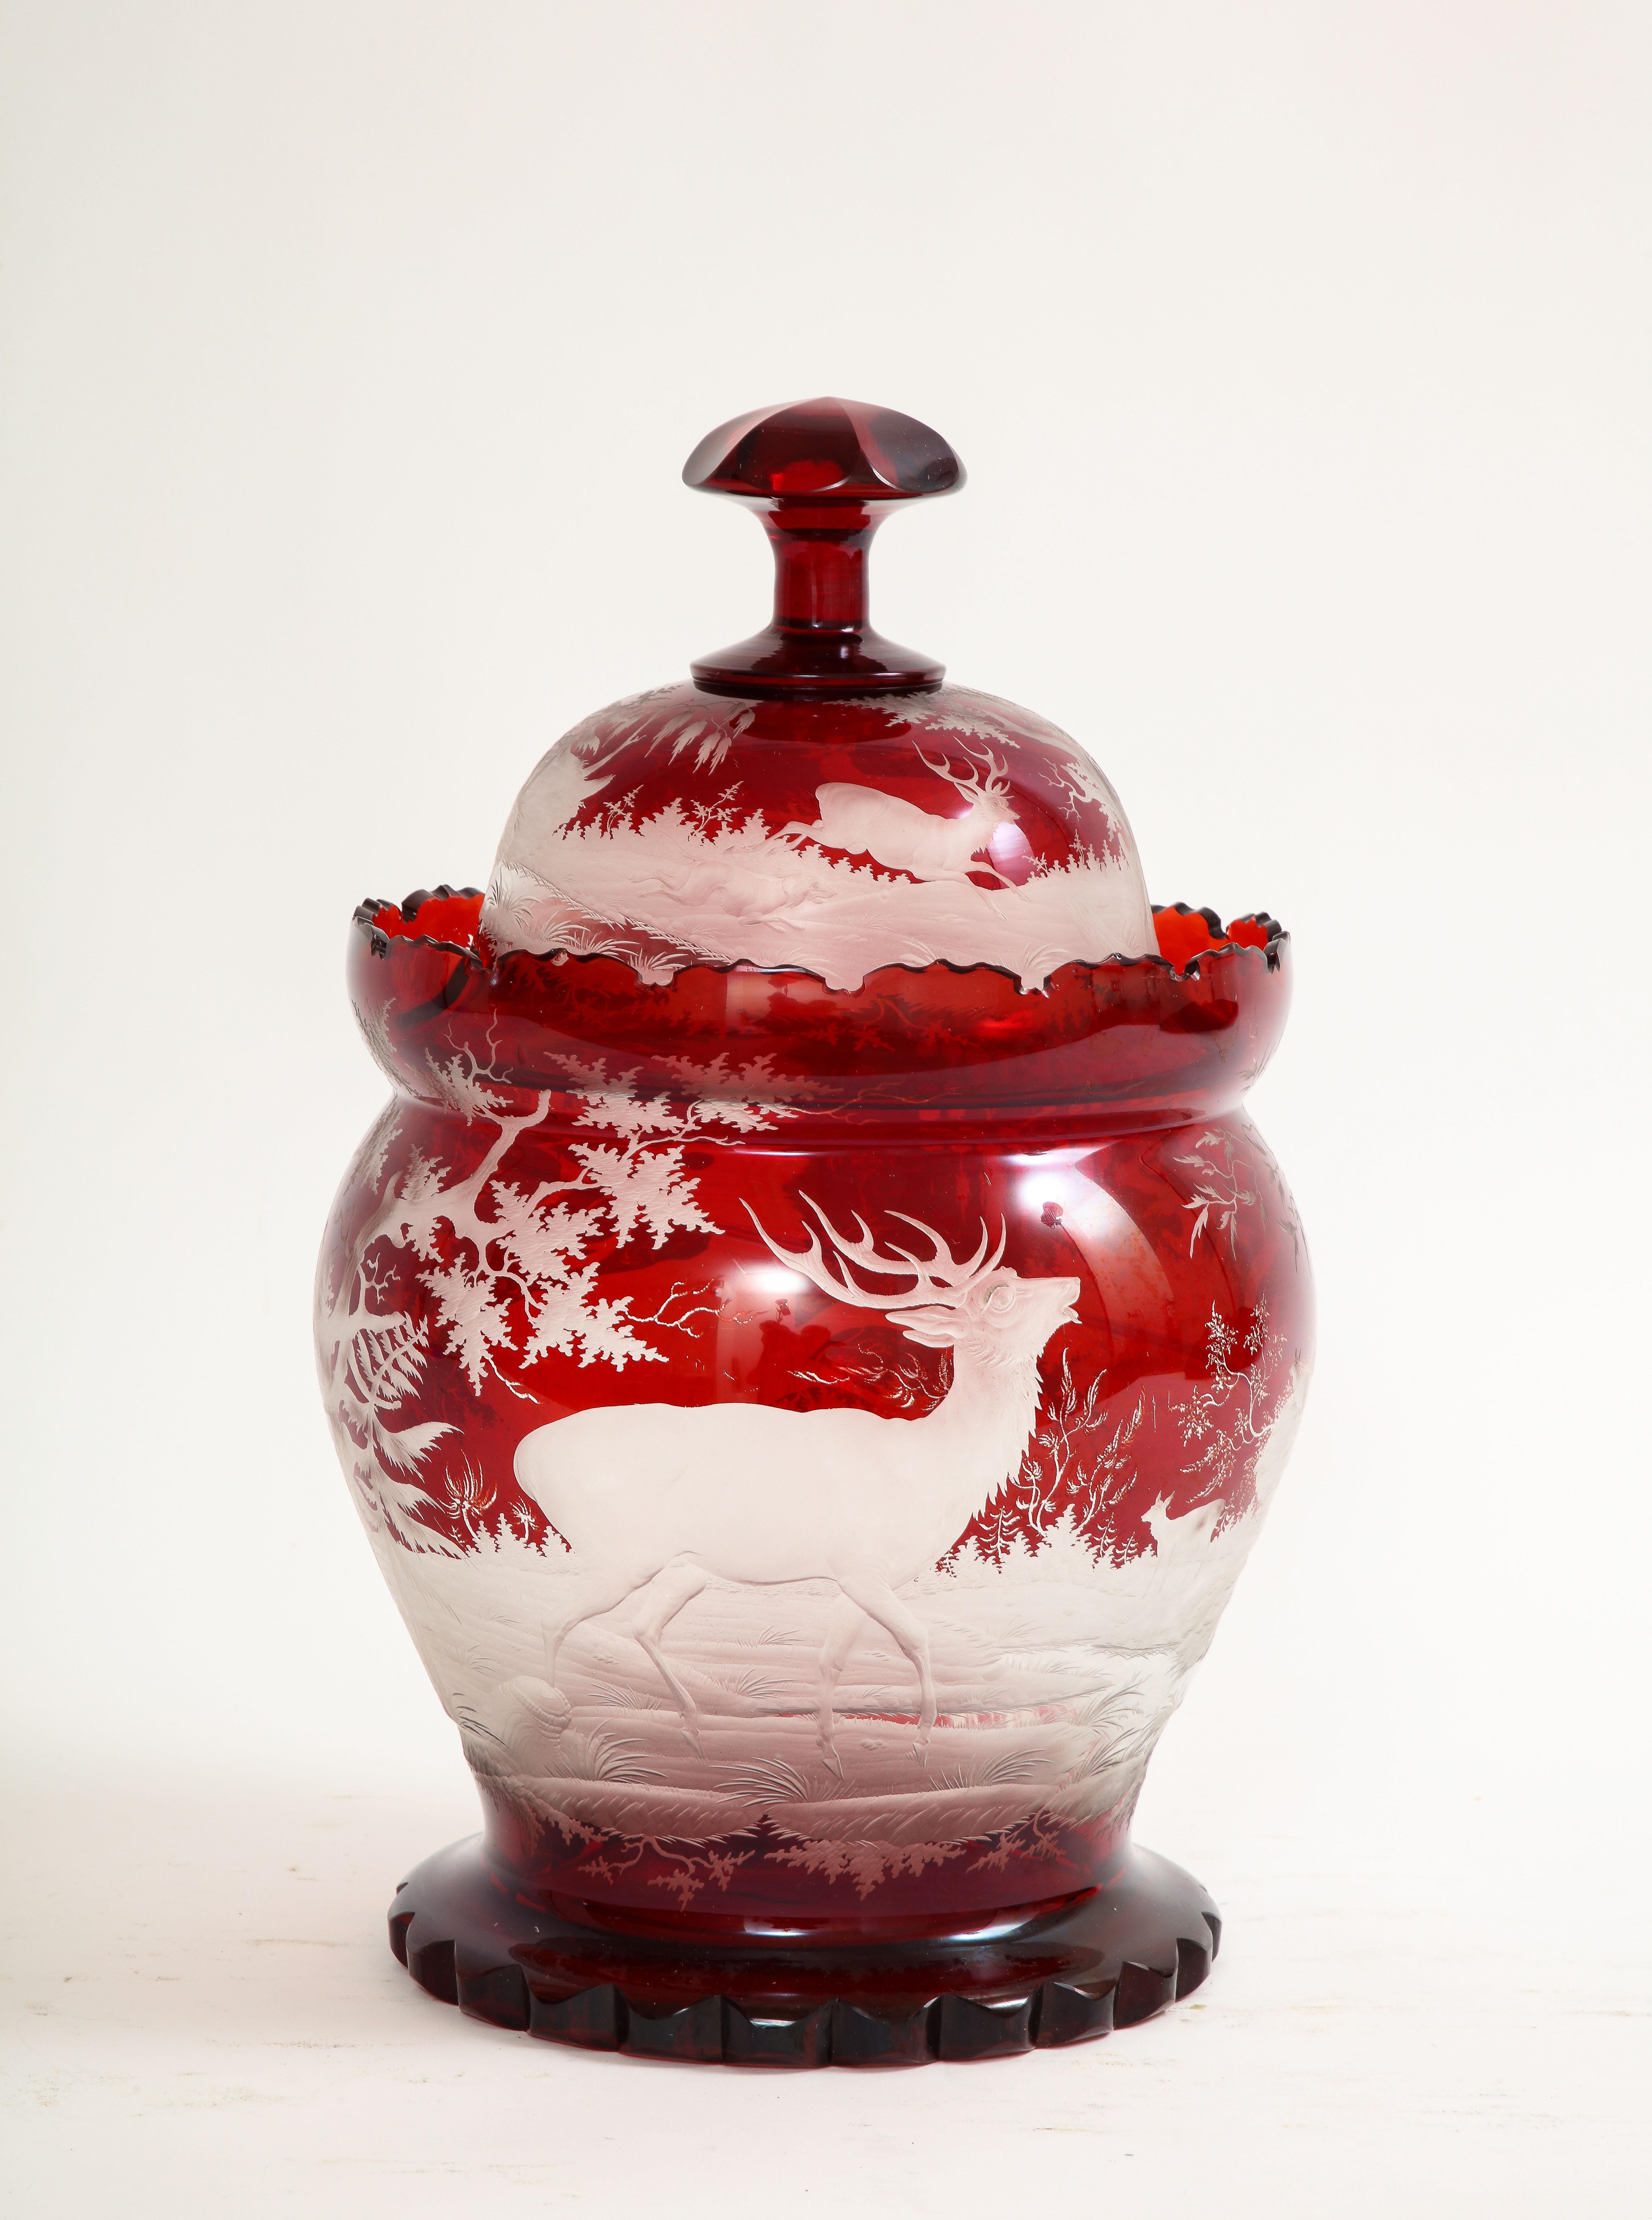 Fantastique et grand bol à punch en cristal de Bohème du XIXe siècle, recouvert de cristal rouge taillé et transparent, avec des scènes de chasse.  Cet ensemble exquis de deux bols à punch présente des sculptures, des gravures et des lavages à